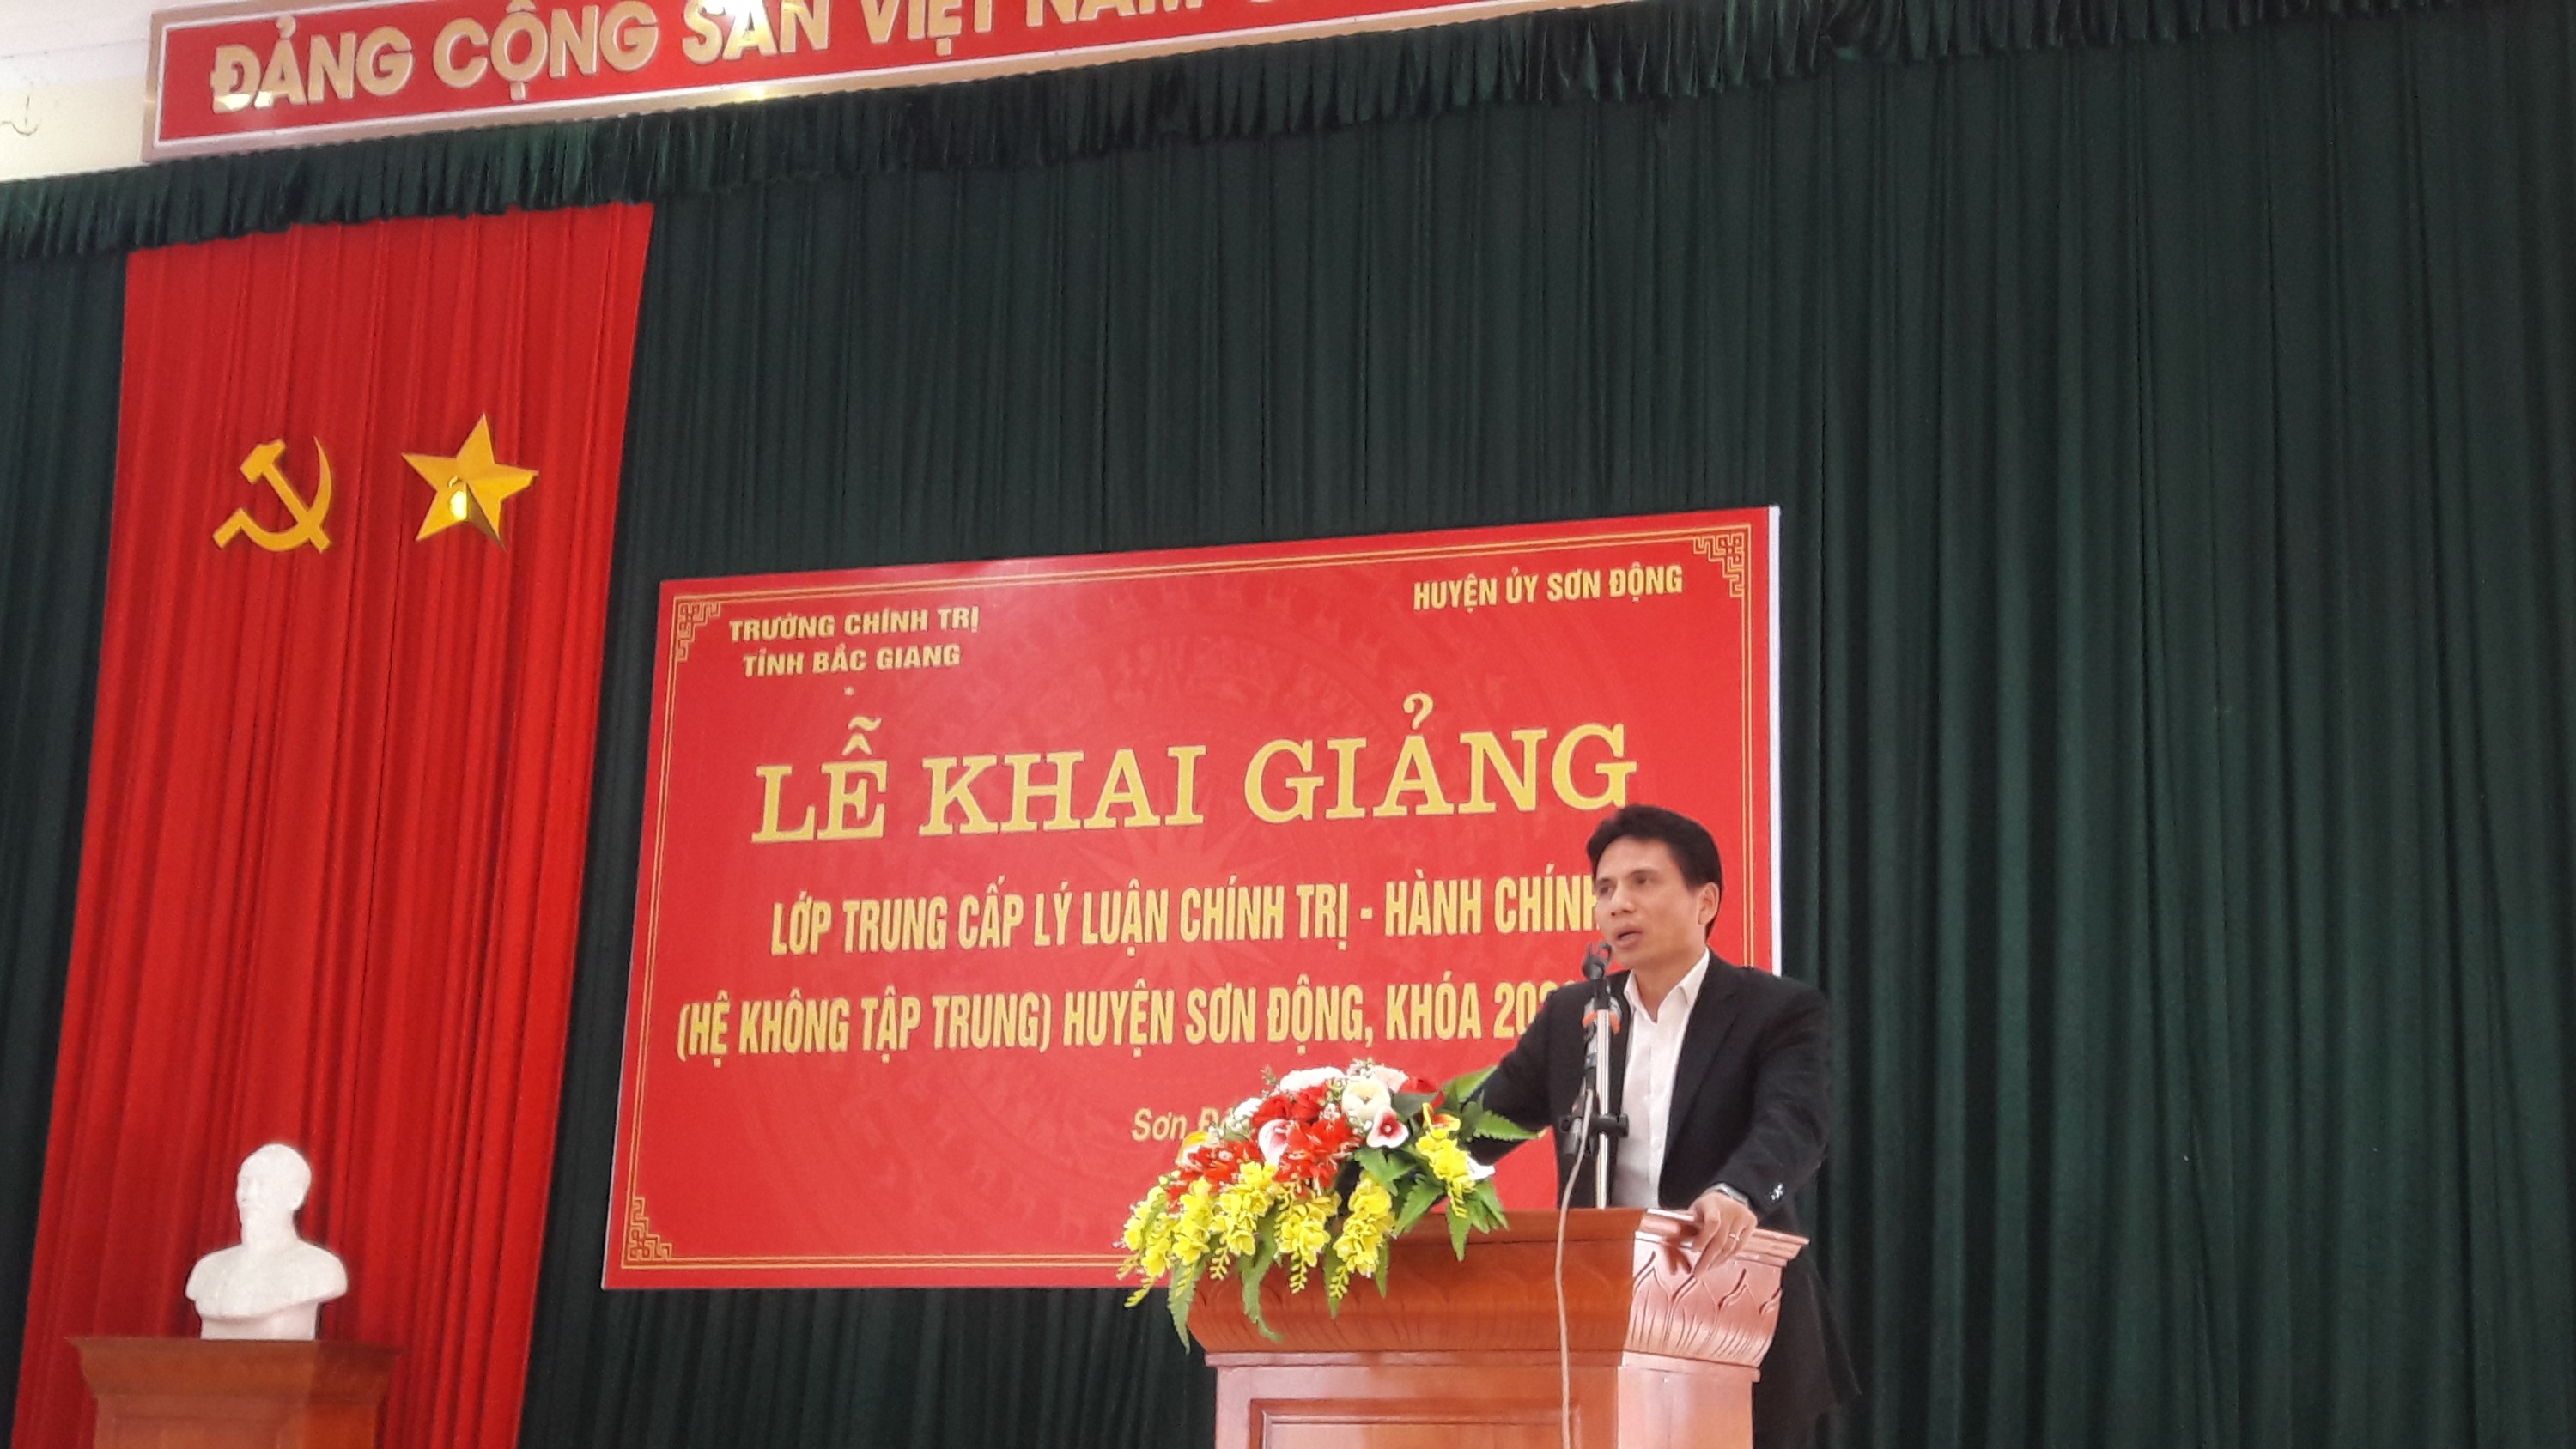 Khai giảng lớp Trung cấp Lý luận Chính trị - Hành chính (Hệ không tập trung) huyện Sơn Động, khóa học 2020 - 2022